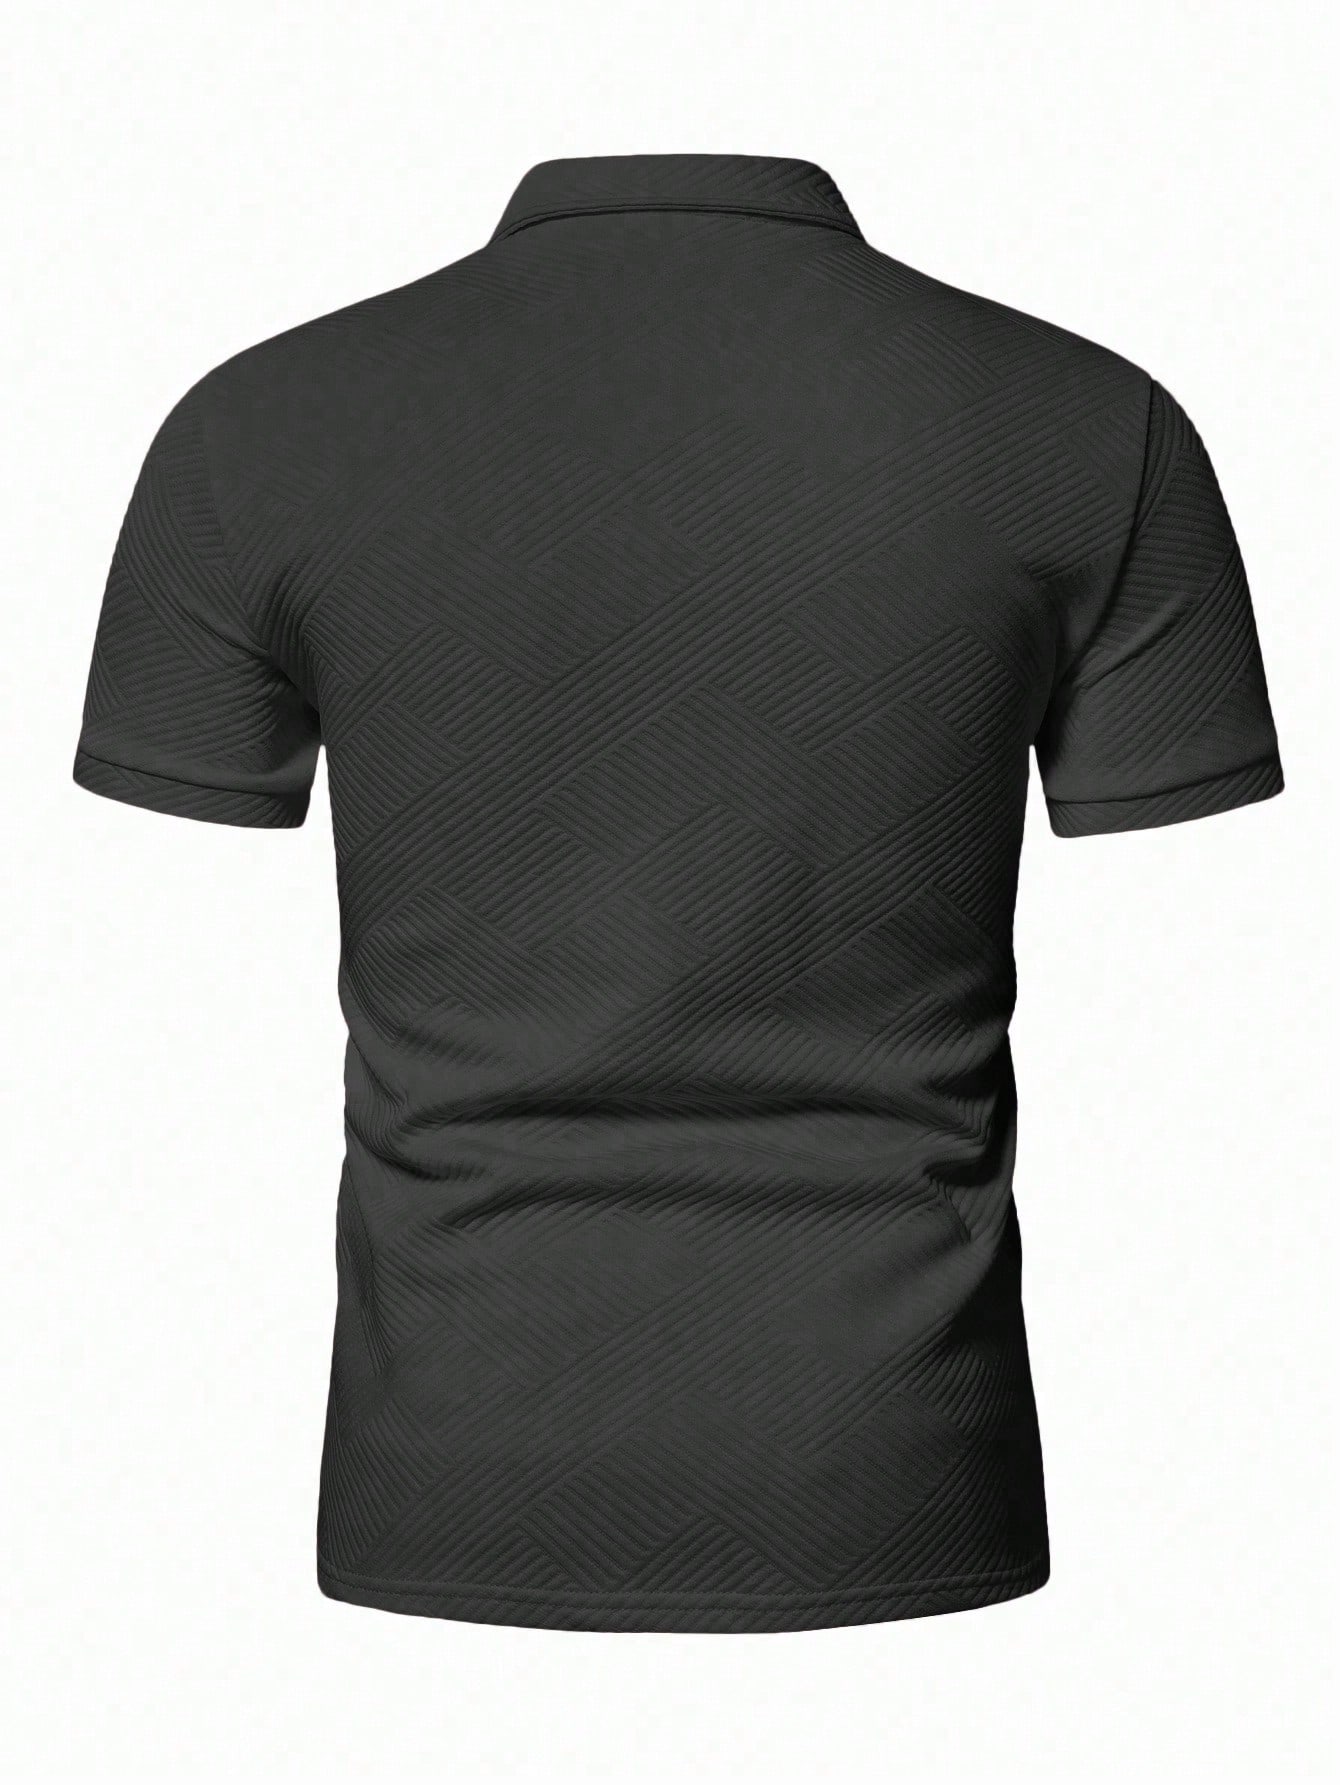 Мужская рубашка-поло с коротким рукавом Manfinity Homme с однотонной текстурой, темно-серый цена и фото